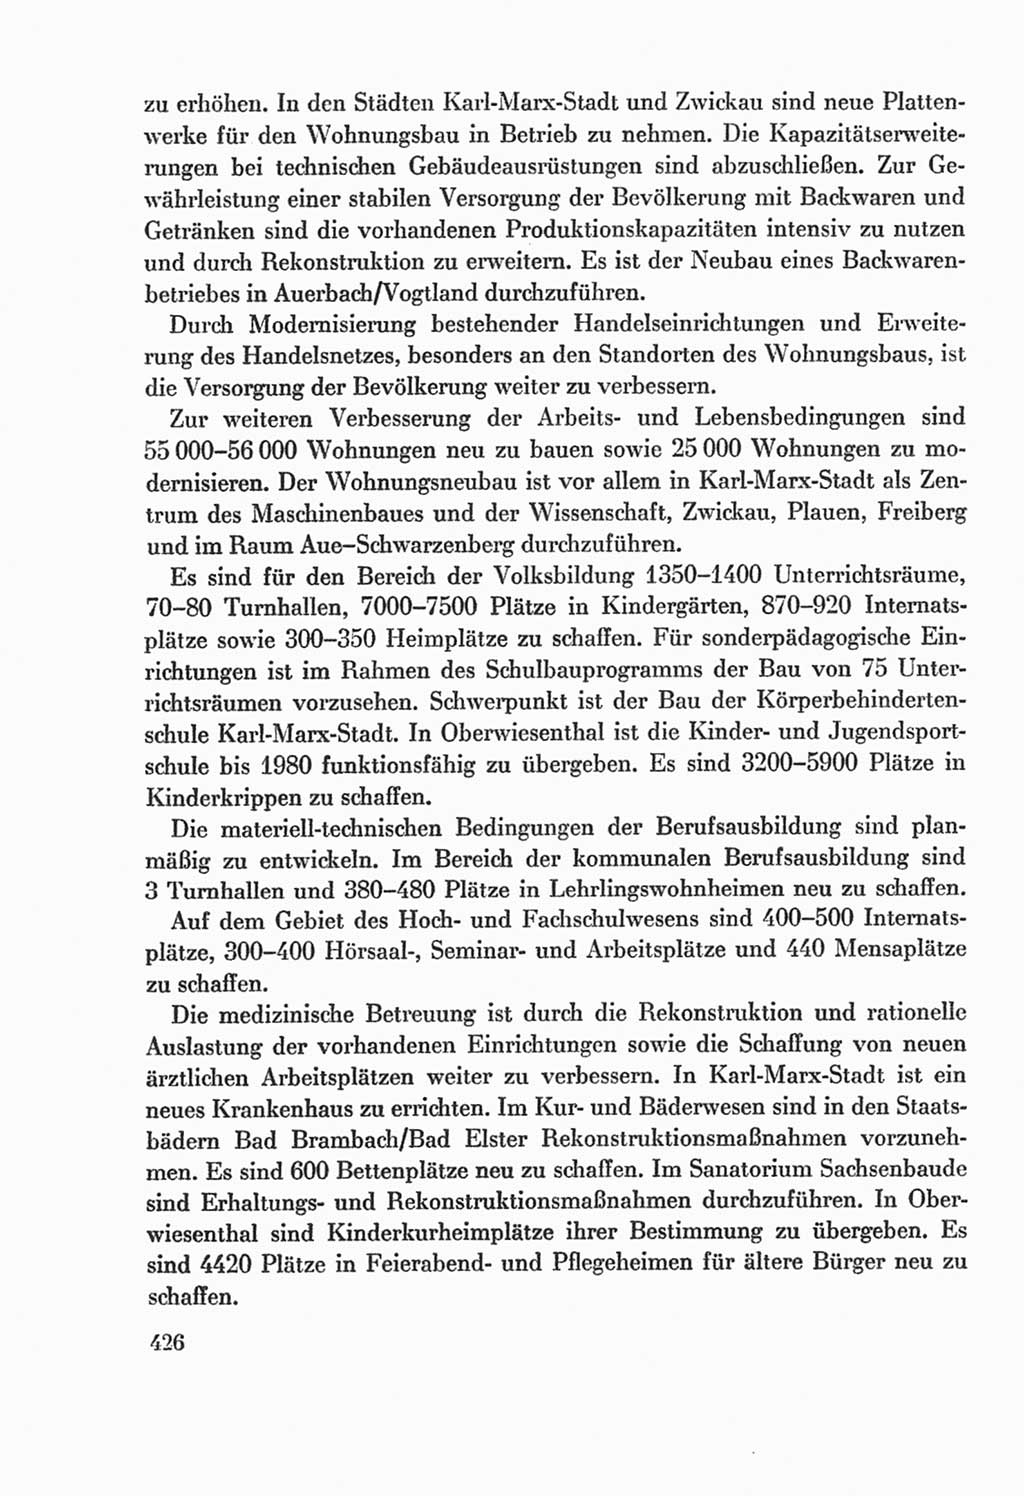 Protokoll der Verhandlungen des Ⅸ. Parteitages der Sozialistischen Einheitspartei Deutschlands (SED) [Deutsche Demokratische Republik (DDR)] 1976, Band 2, Seite 426 (Prot. Verh. Ⅸ. PT SED DDR 1976, Bd. 2, S. 426)